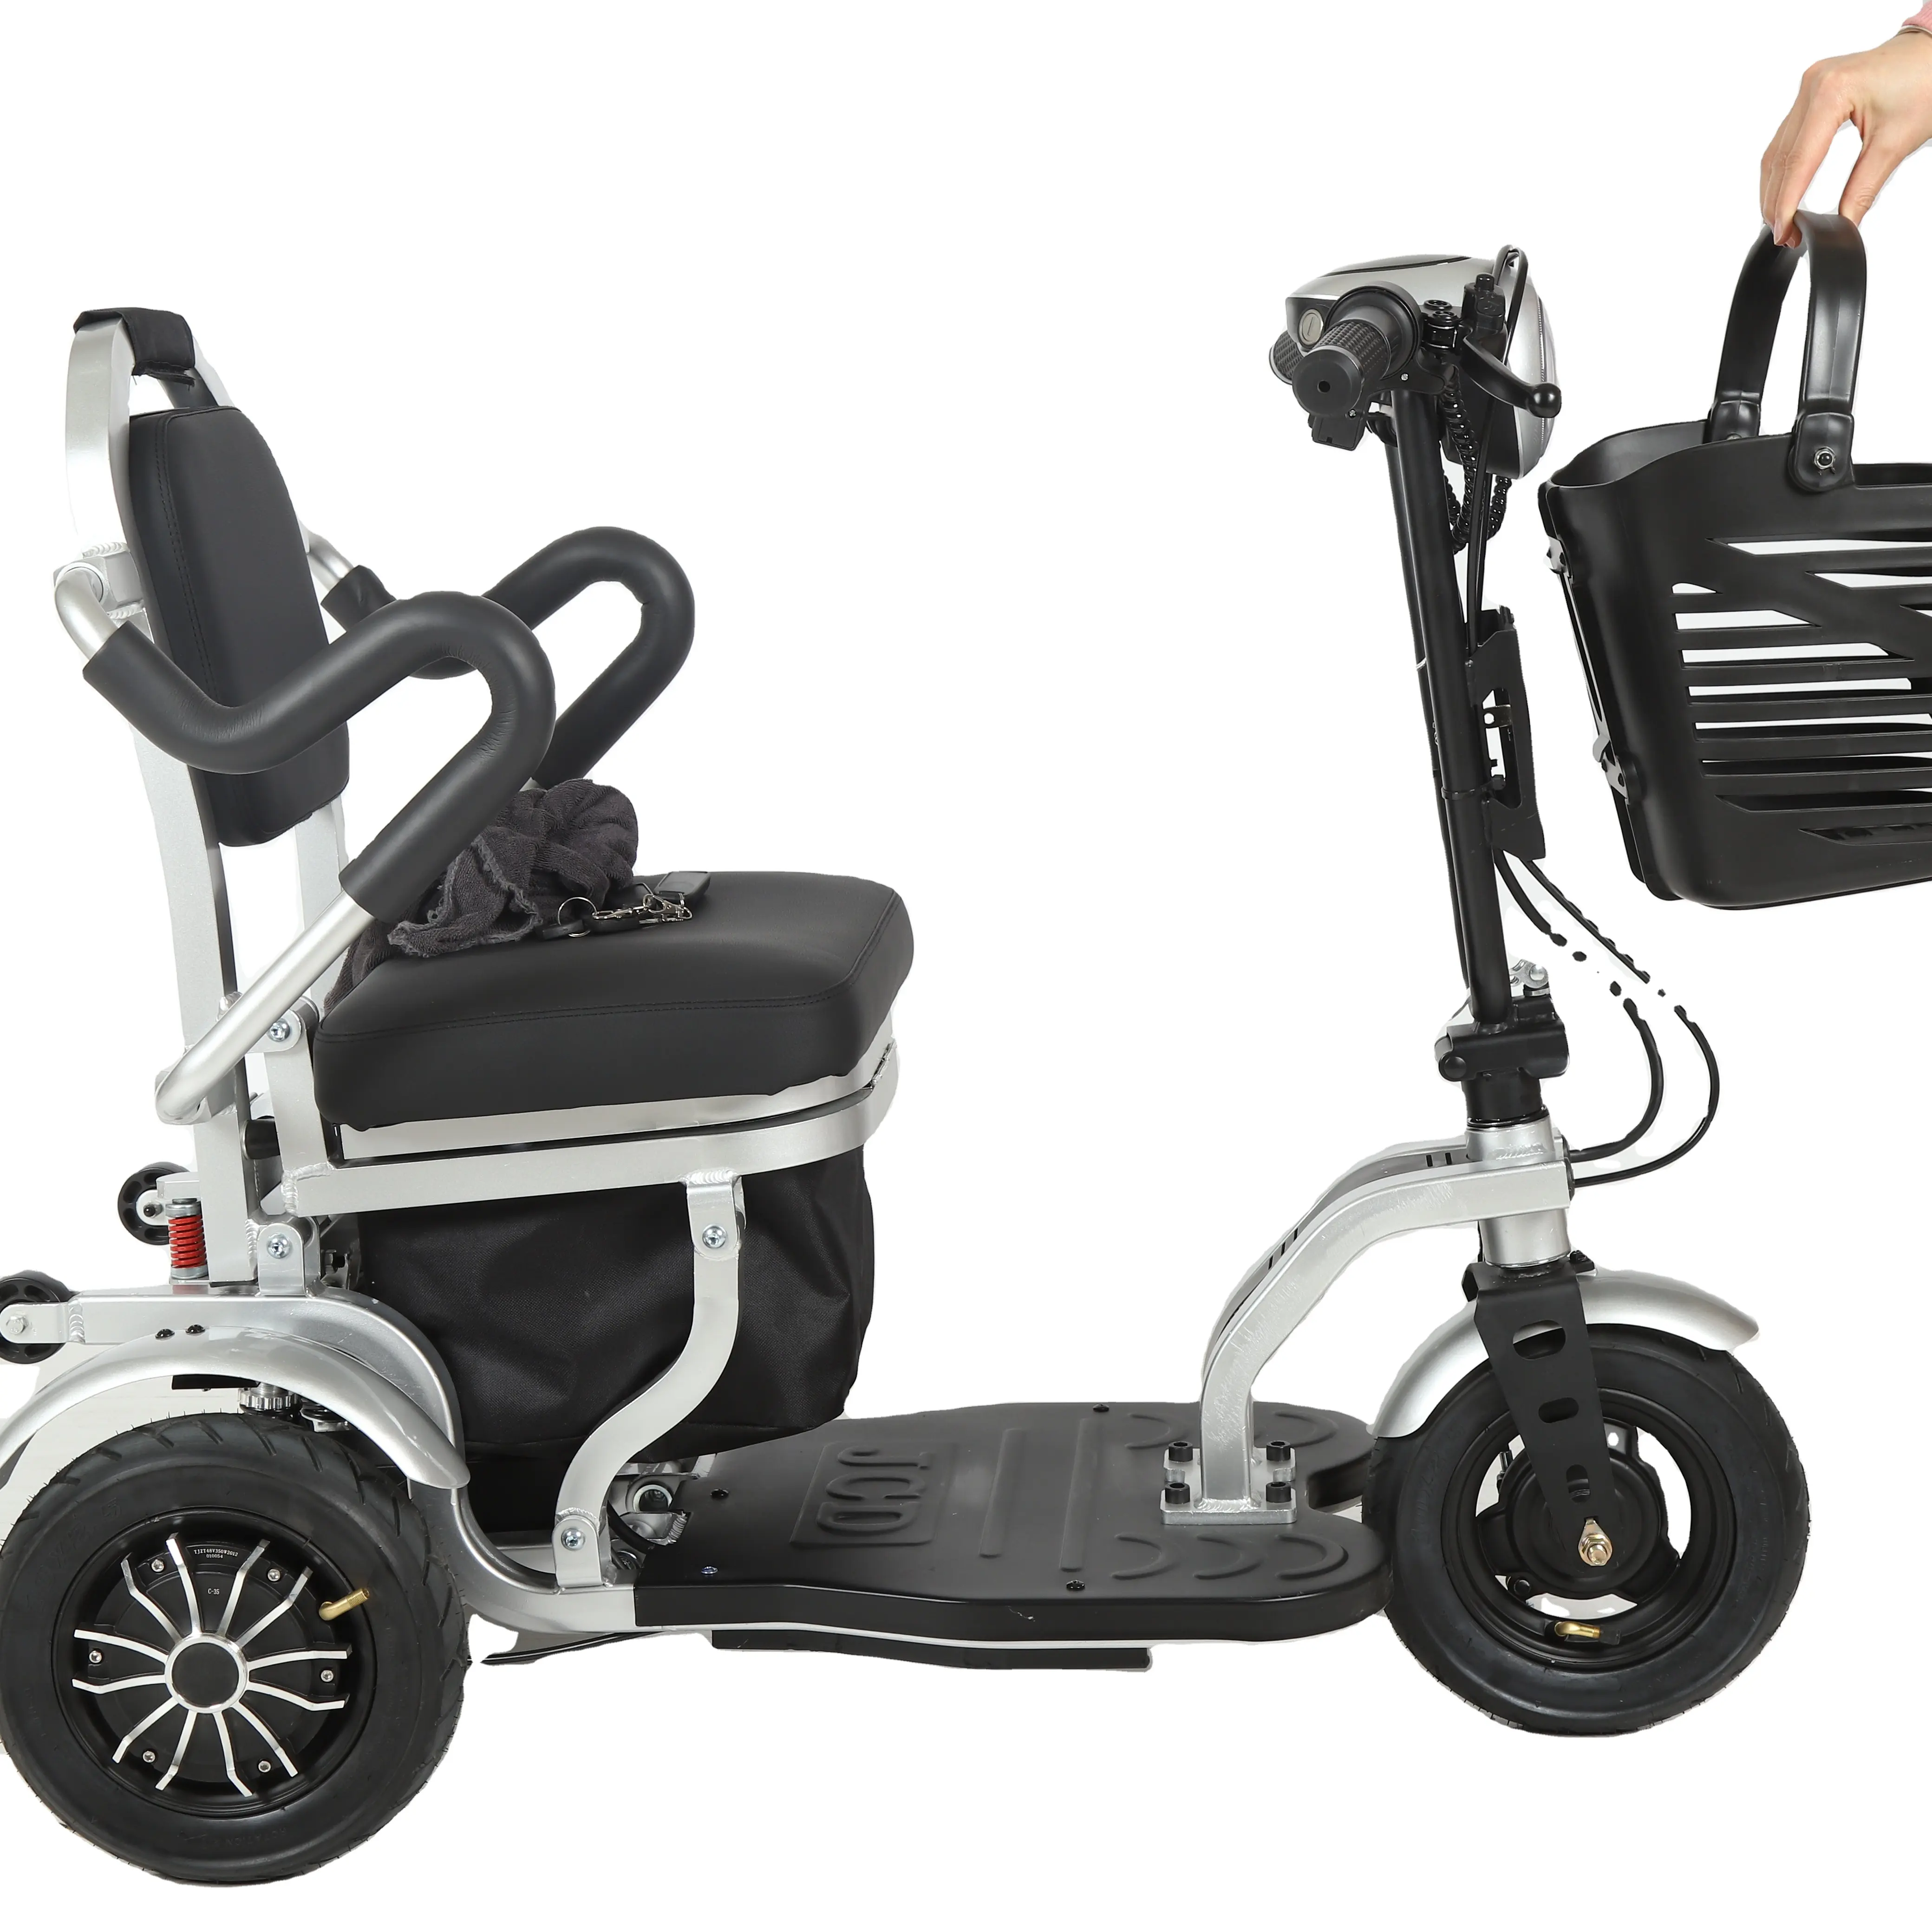 Легкая электрическая гоночная инвалидная коляска для защиты от головного мозга, продажа для детей, silla ruинтервал или silla de ruинтервал для инвалидов